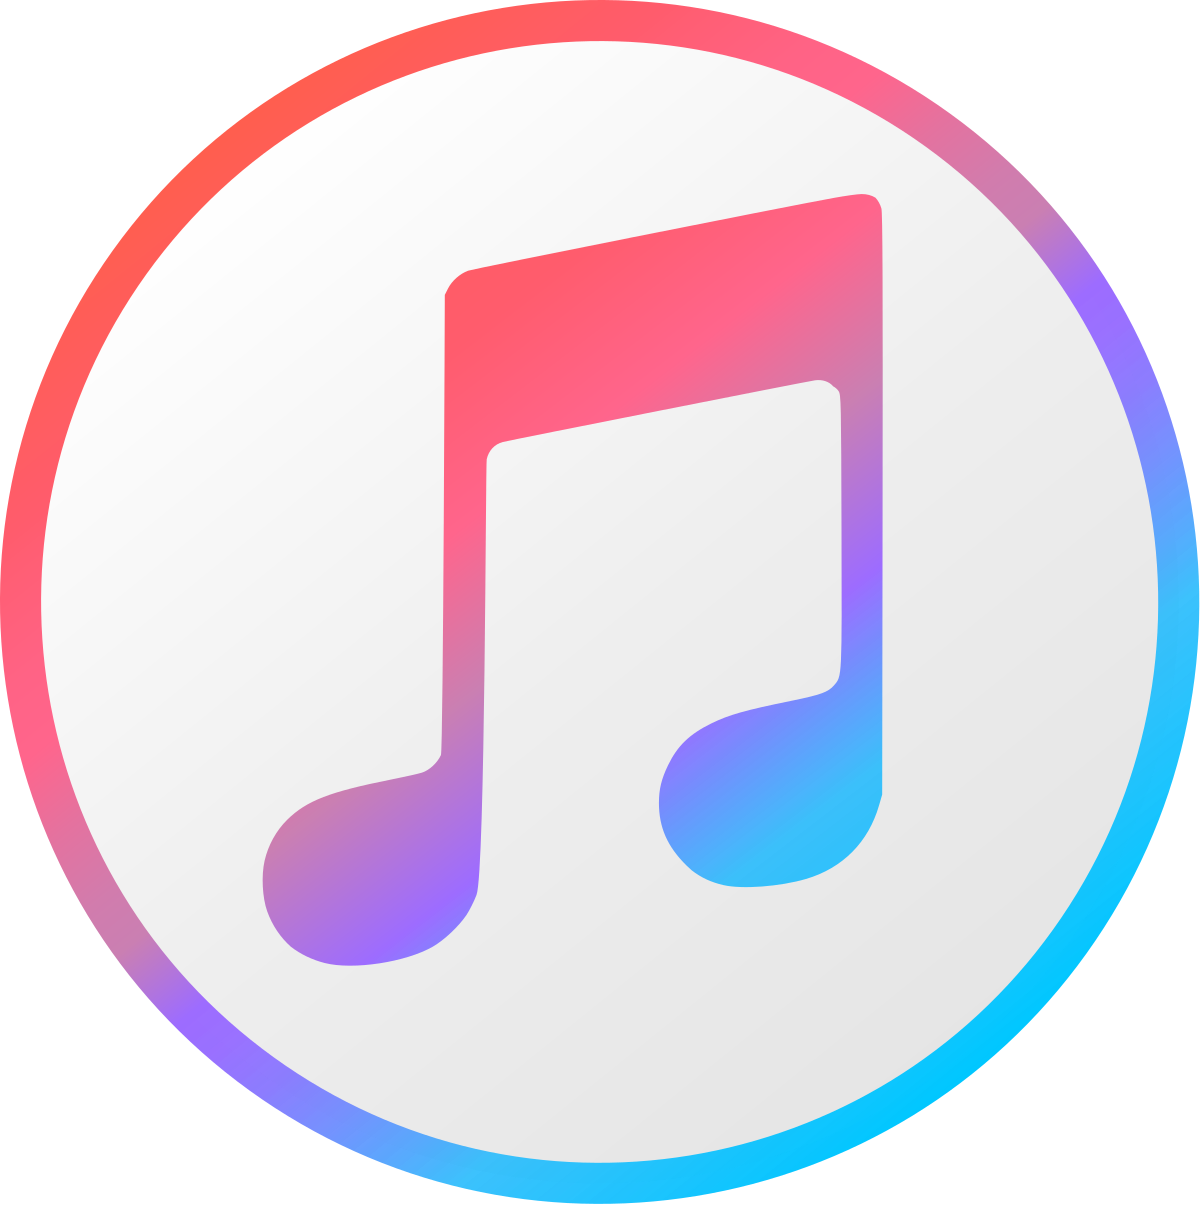 iTunes 무료로 다운 받기 - 2022년 최신 버전